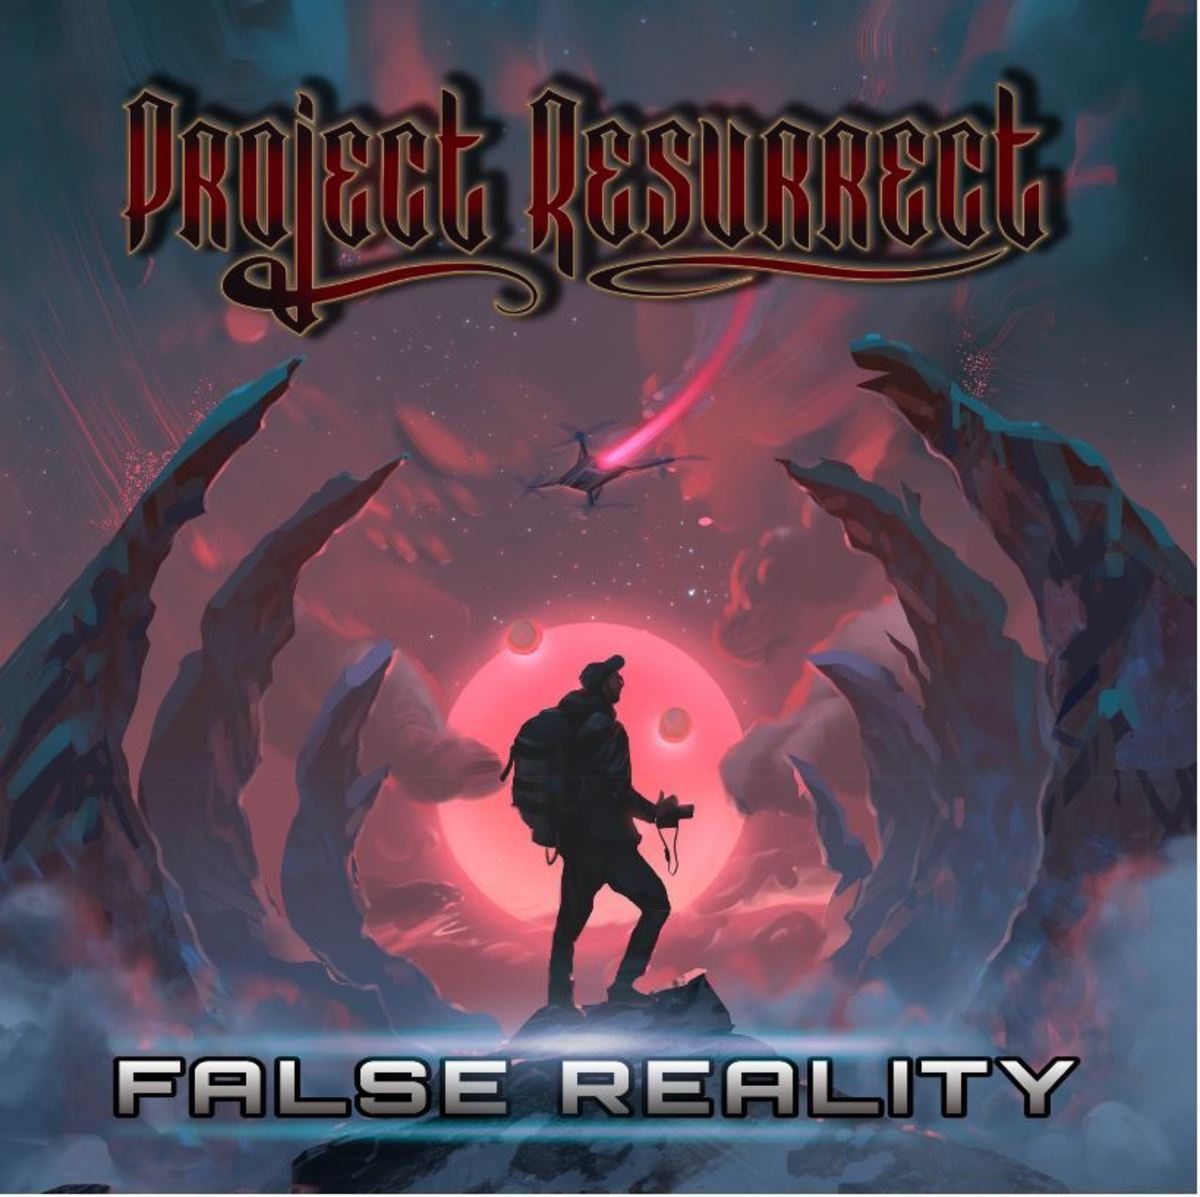 "False Reality" album cover